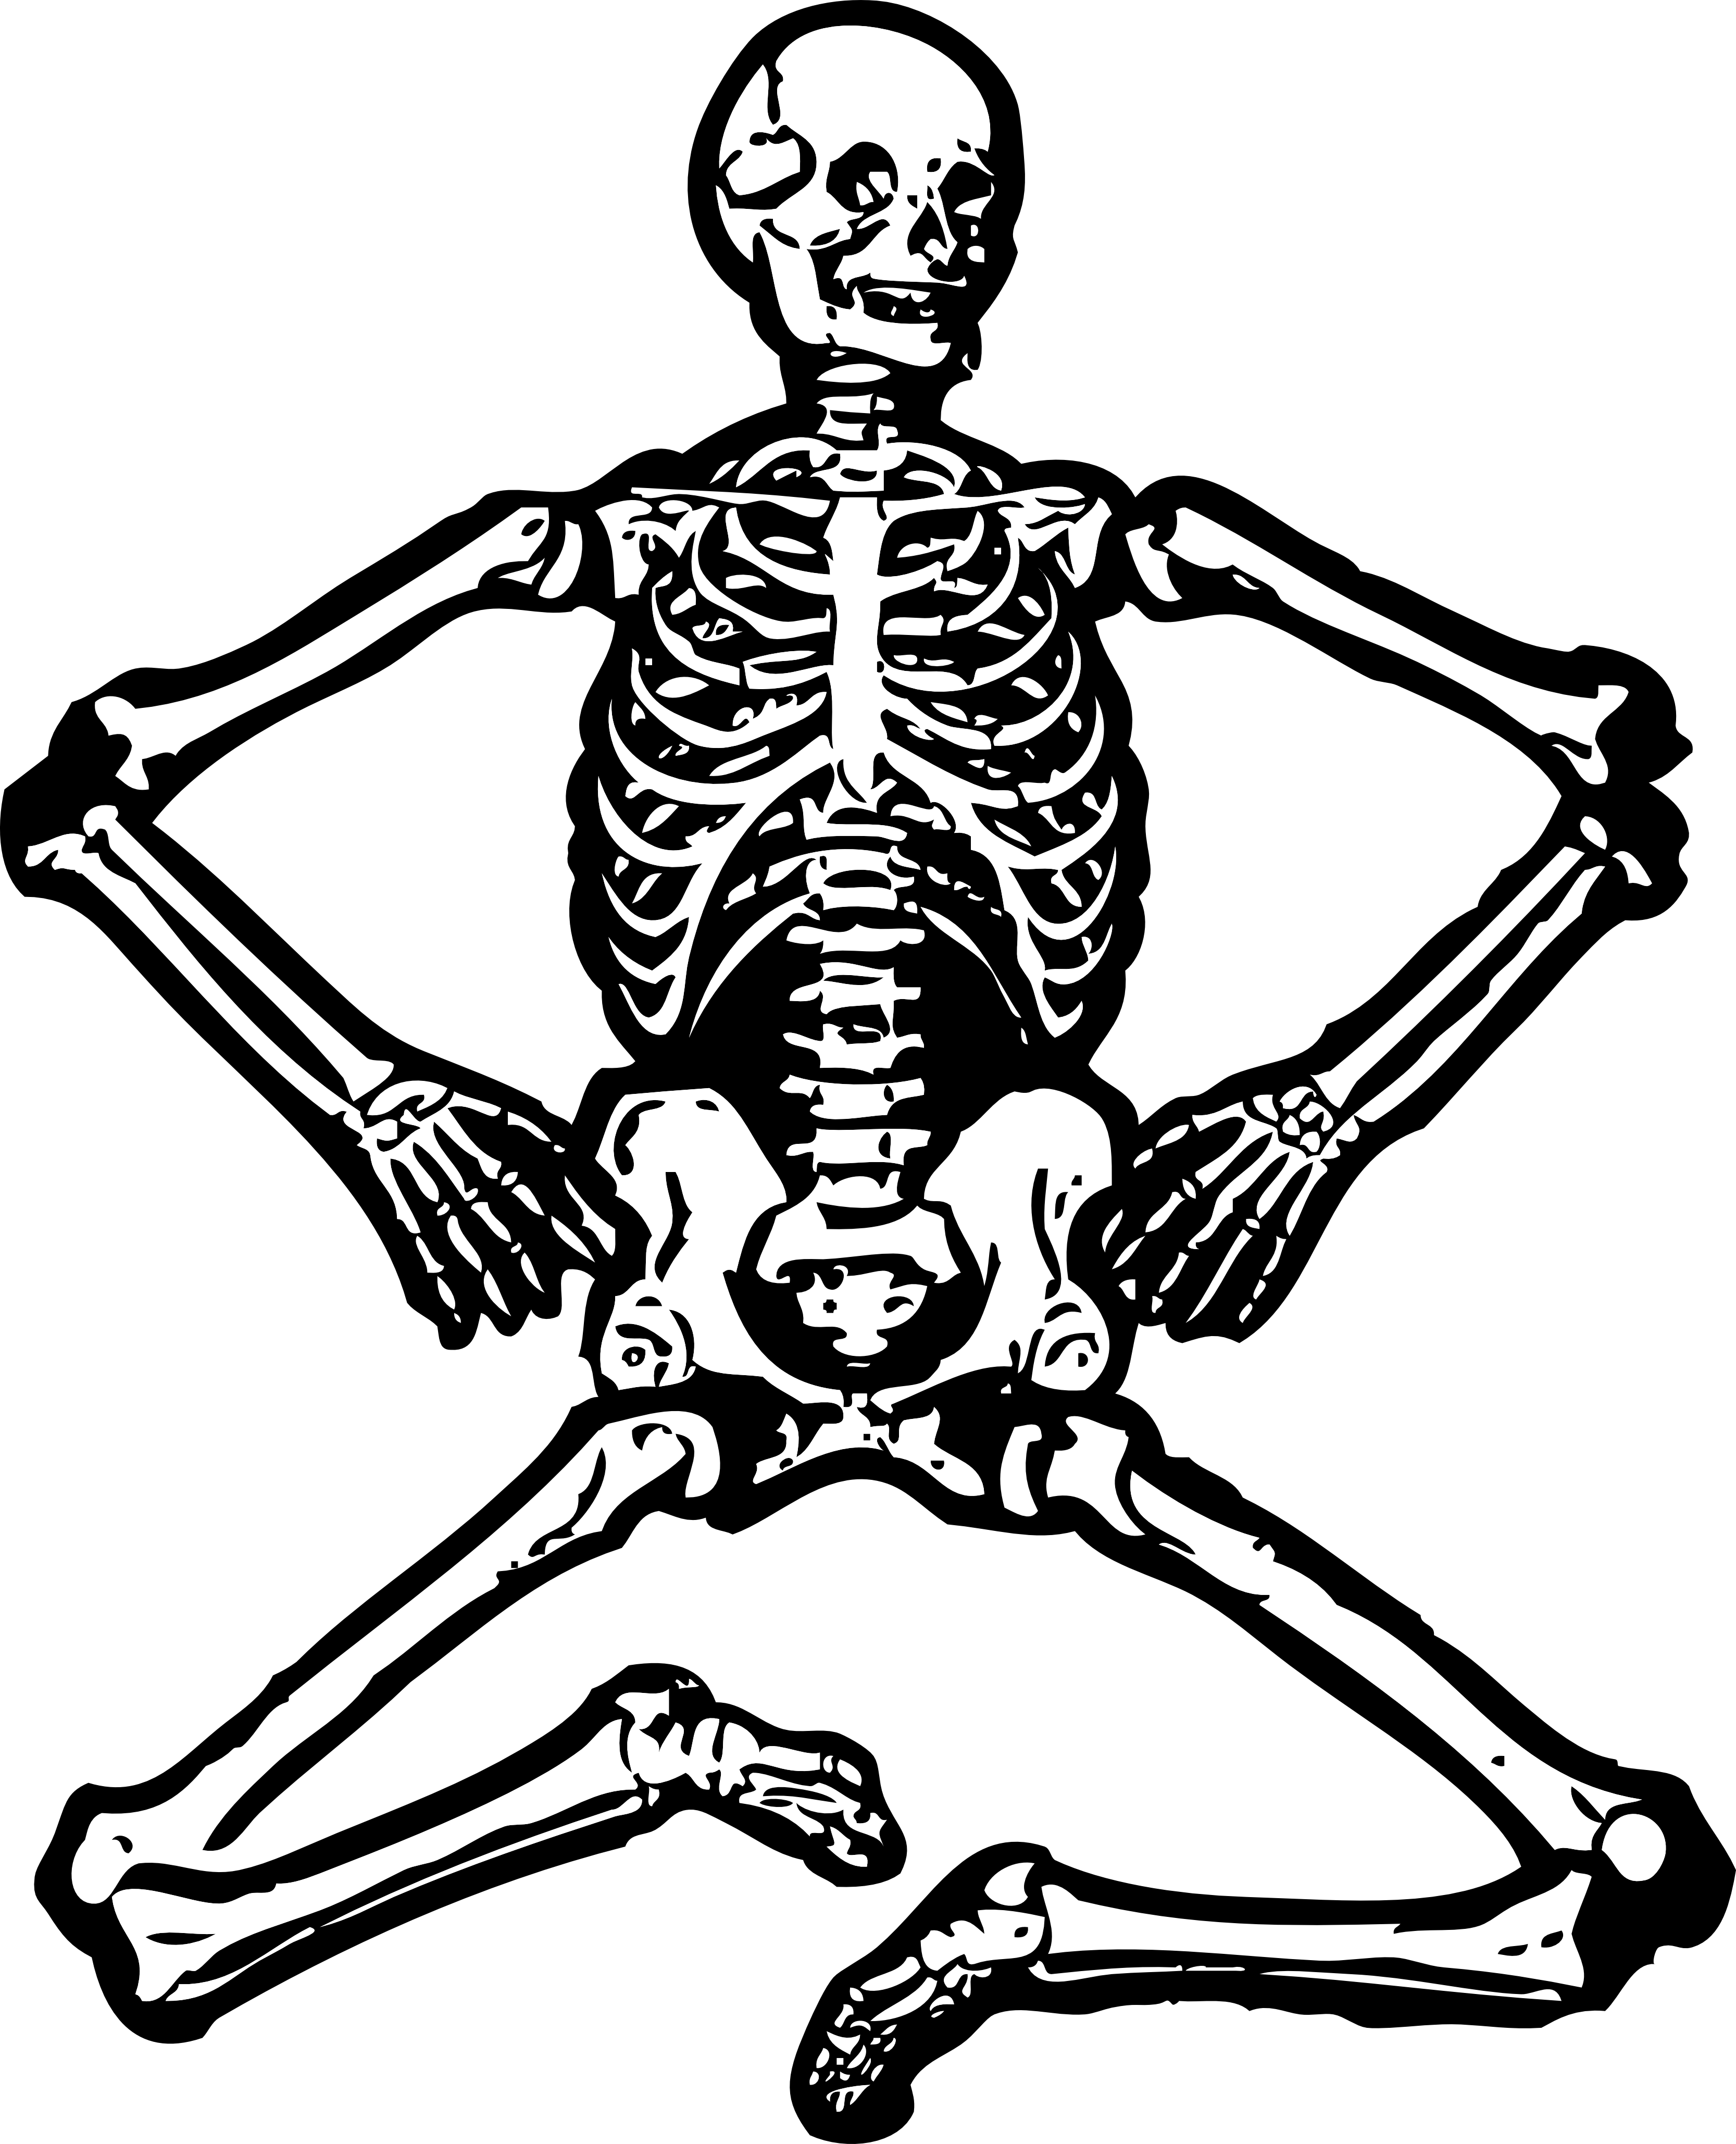 Skeleton clipart, Skeleton Transparent FREE for download on